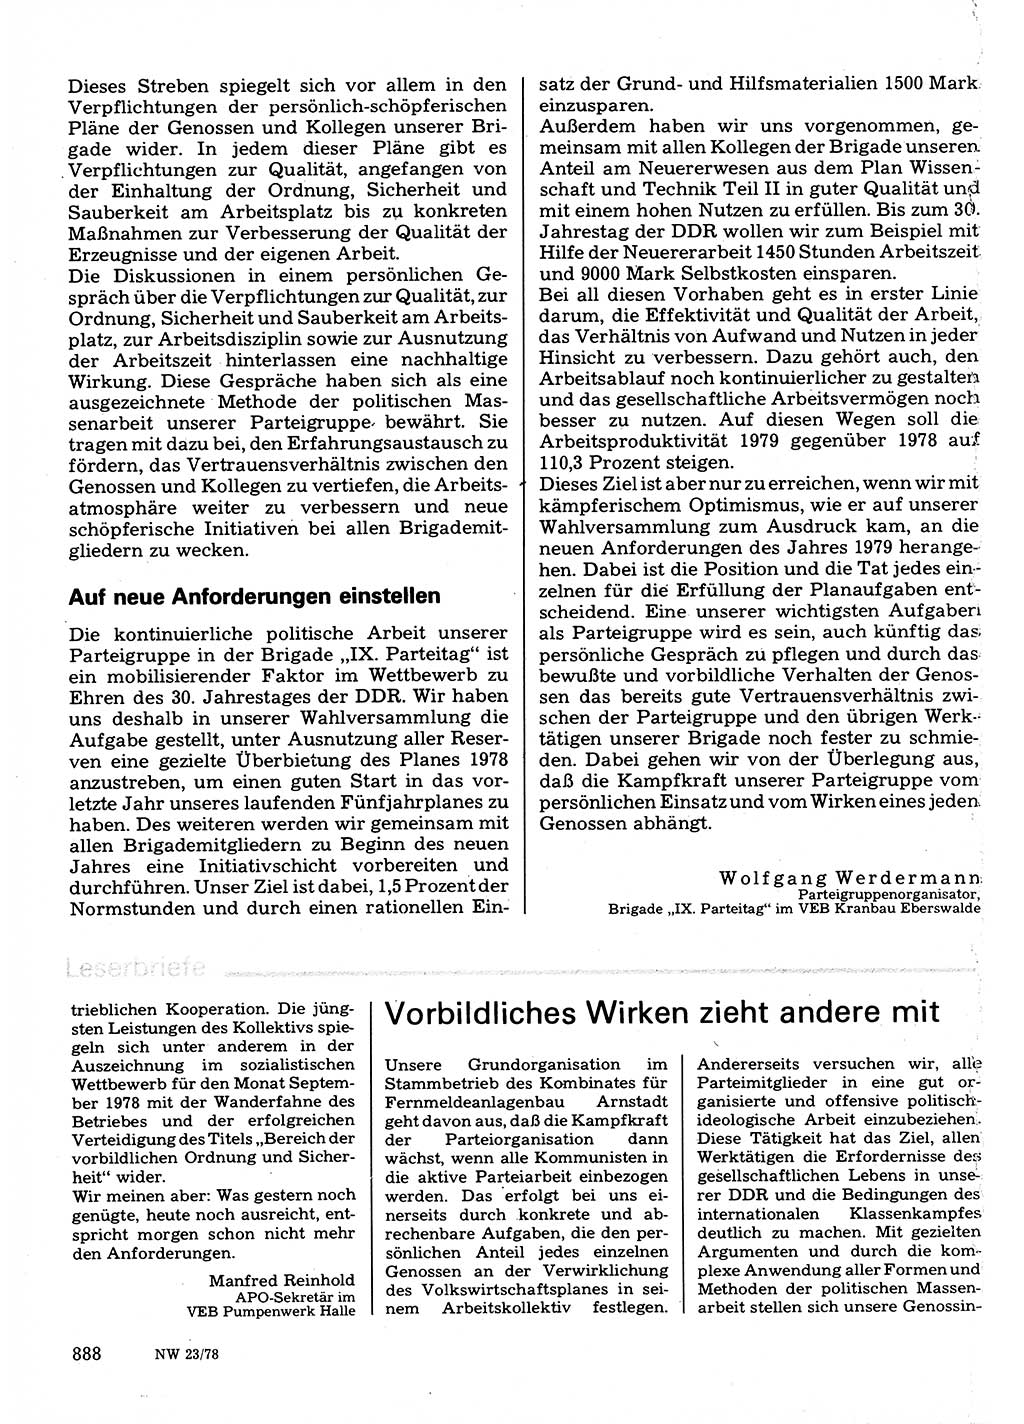 Neuer Weg (NW), Organ des Zentralkomitees (ZK) der SED (Sozialistische Einheitspartei Deutschlands) für Fragen des Parteilebens, 33. Jahrgang [Deutsche Demokratische Republik (DDR)] 1978, Seite 888 (NW ZK SED DDR 1978, S. 888)